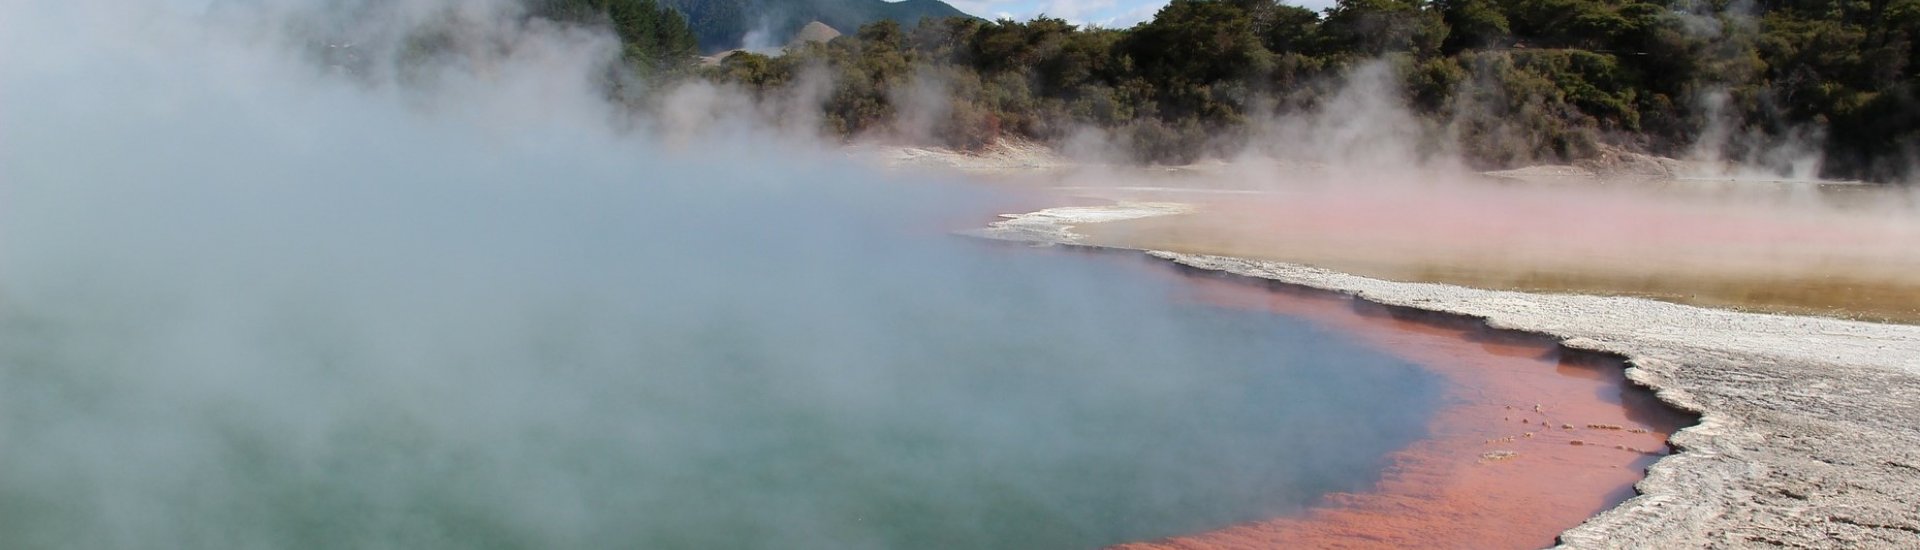 Volcanic Pool Rotorua